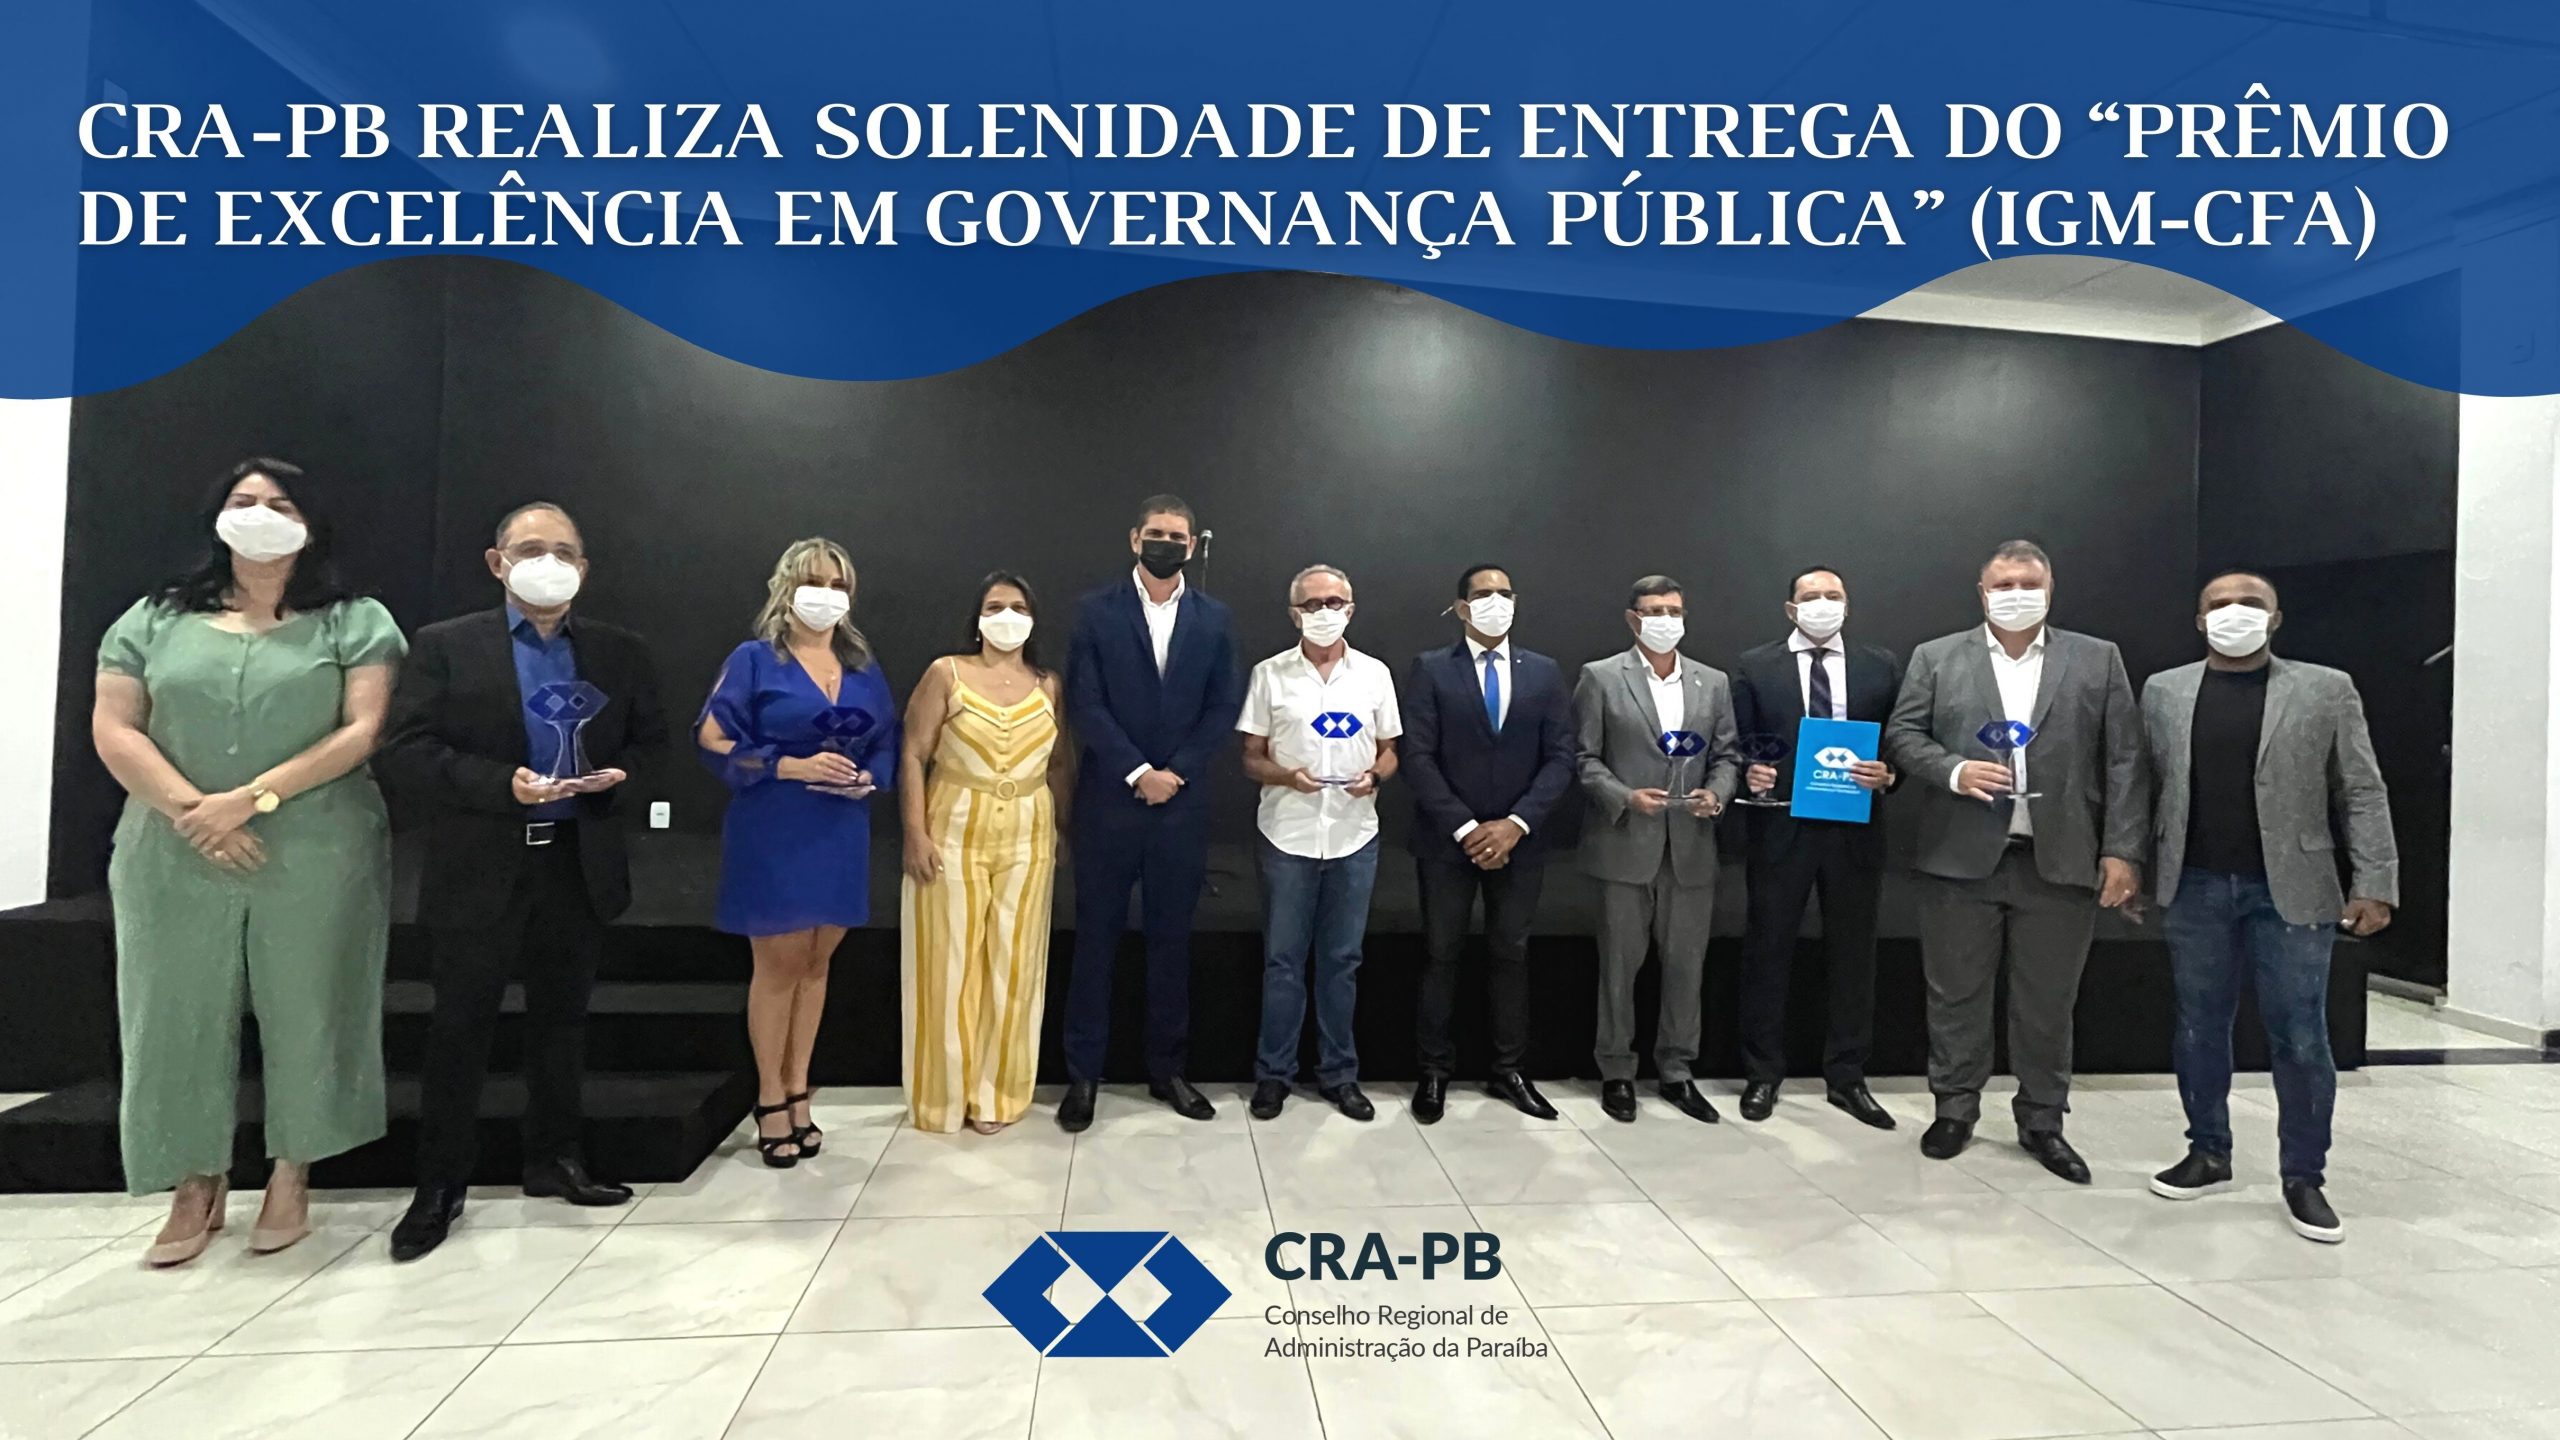 You are currently viewing CRA-PB realiza solenidade de entrega do Prêmio de Excelência em Governança Pública” (IGM/CFA)